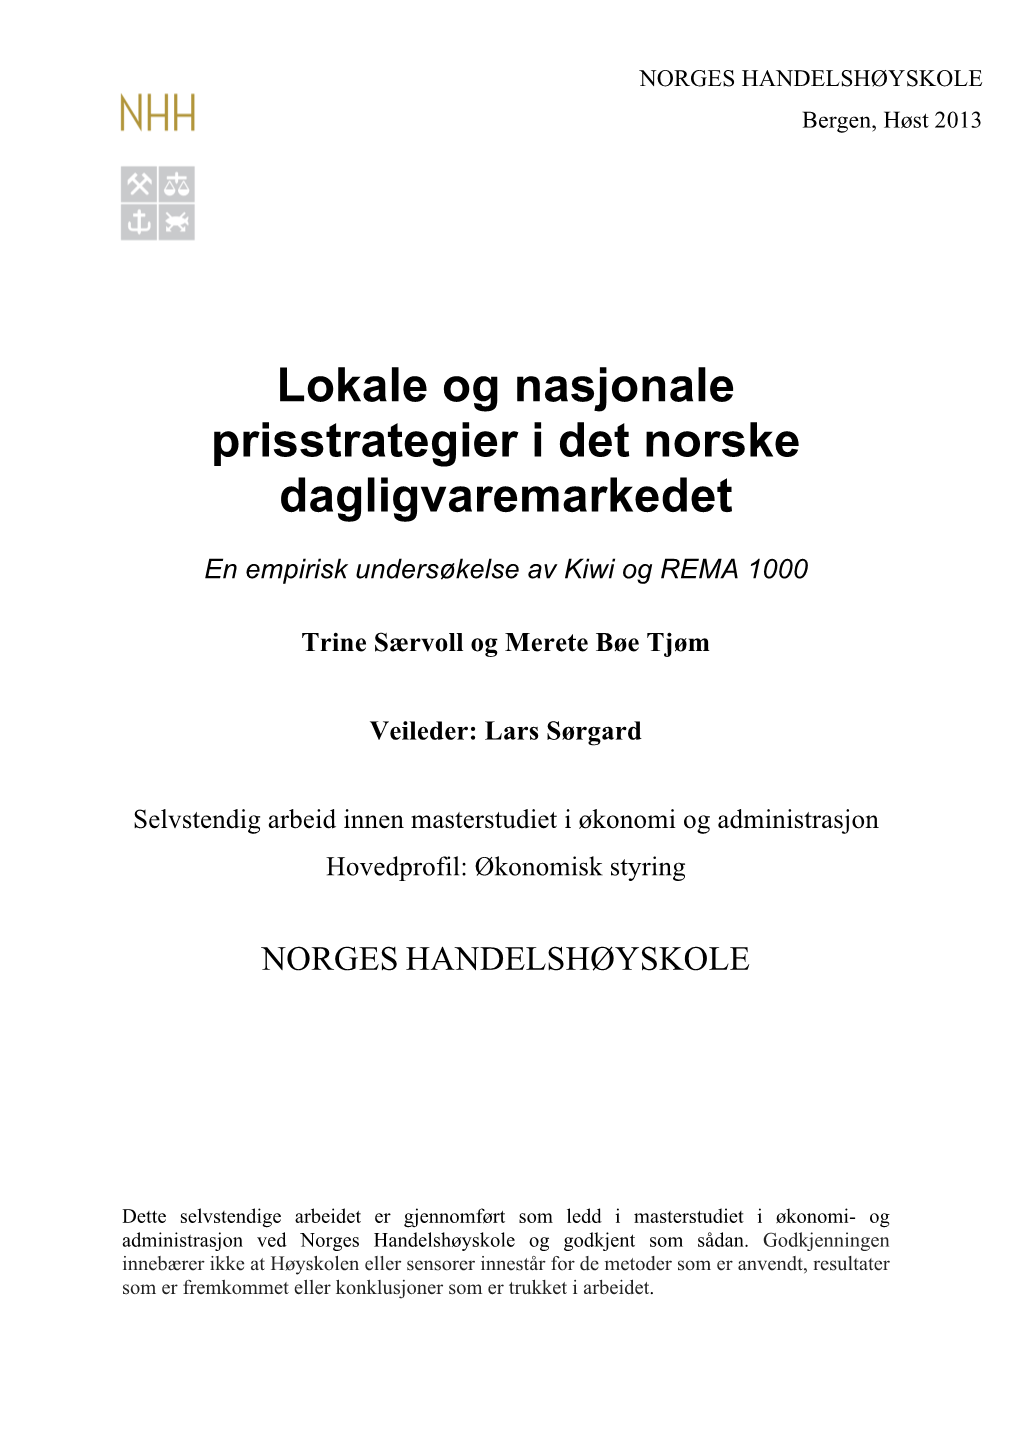 Lokale Og Nasjonale Prisstrategier I Det Norske Dagligvaremarkedet